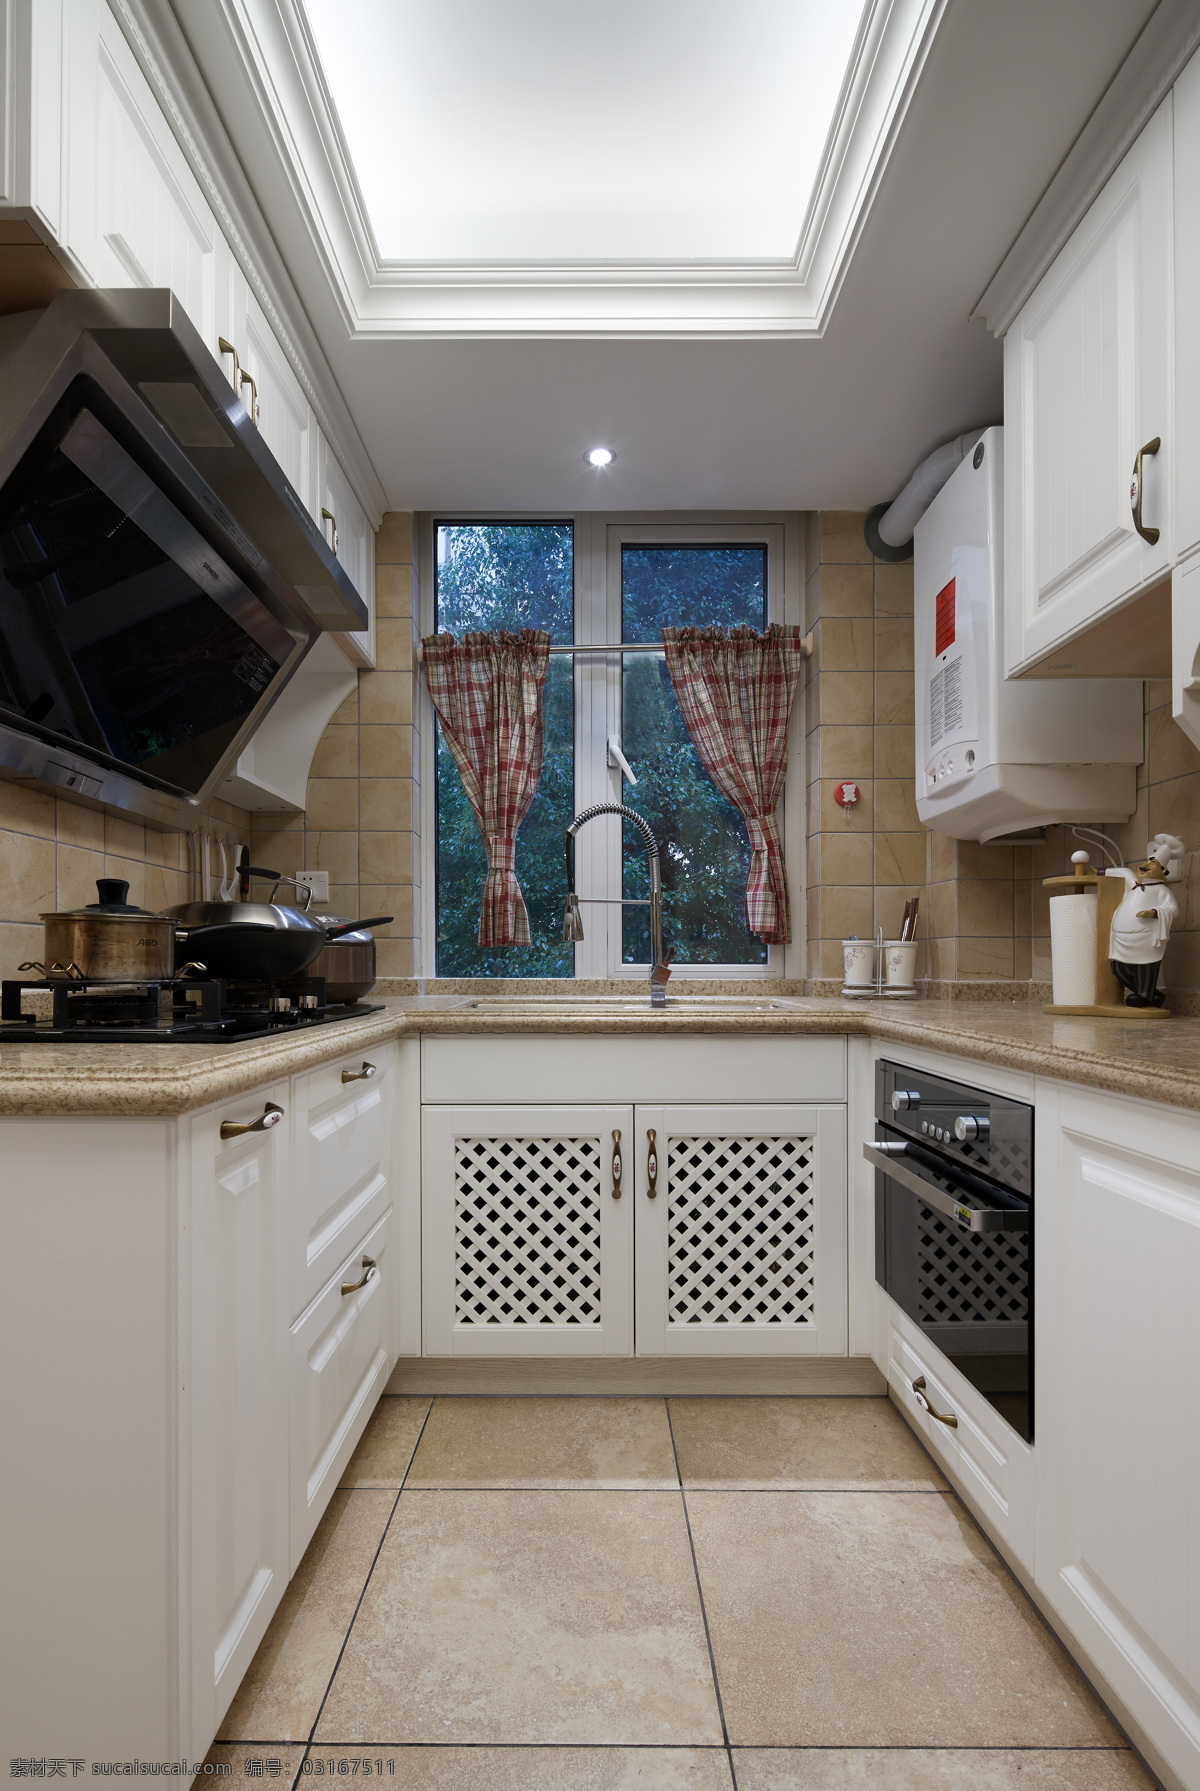 厨房 室内设计 家装 效果图 油烟机 厨具 锅 液化灶 窗户 窗帘 橱柜